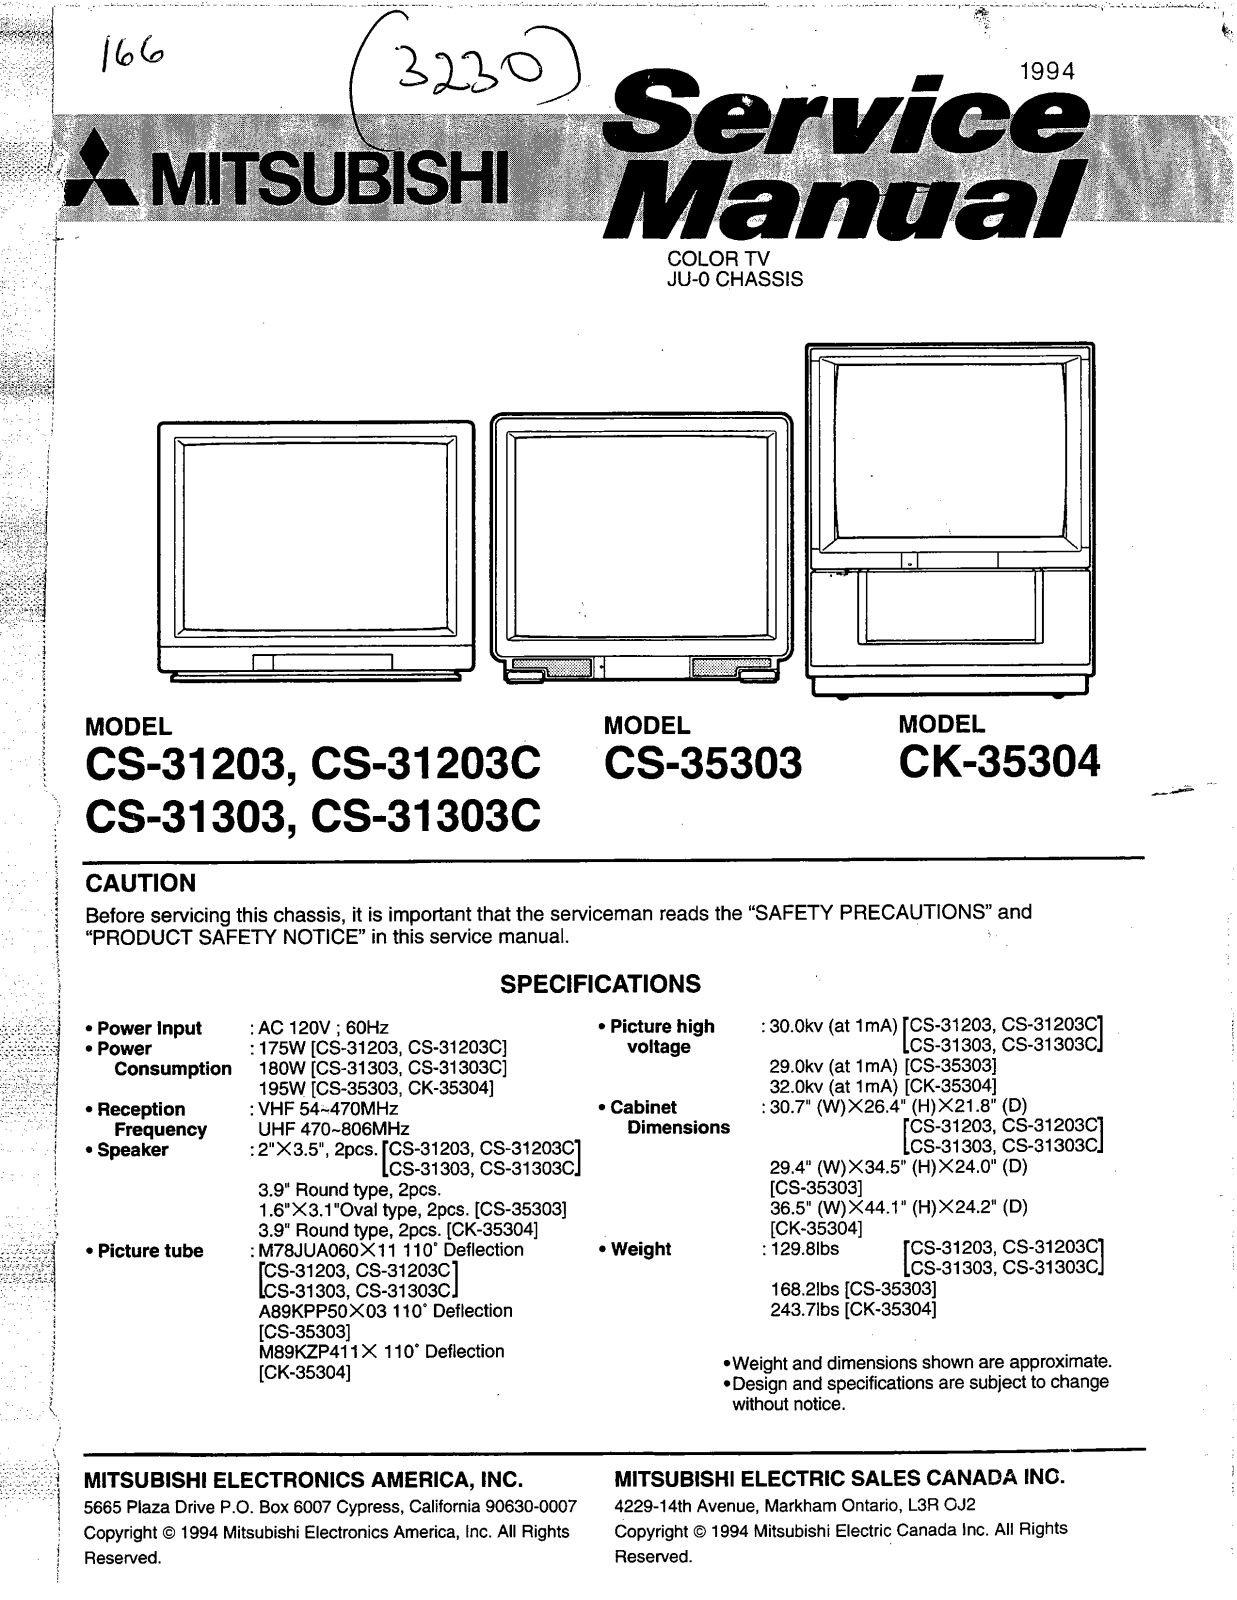 Mitsubishi CK-35304, CS-35303, CS-31303C, CS-31303, CS-31203 Service Manual